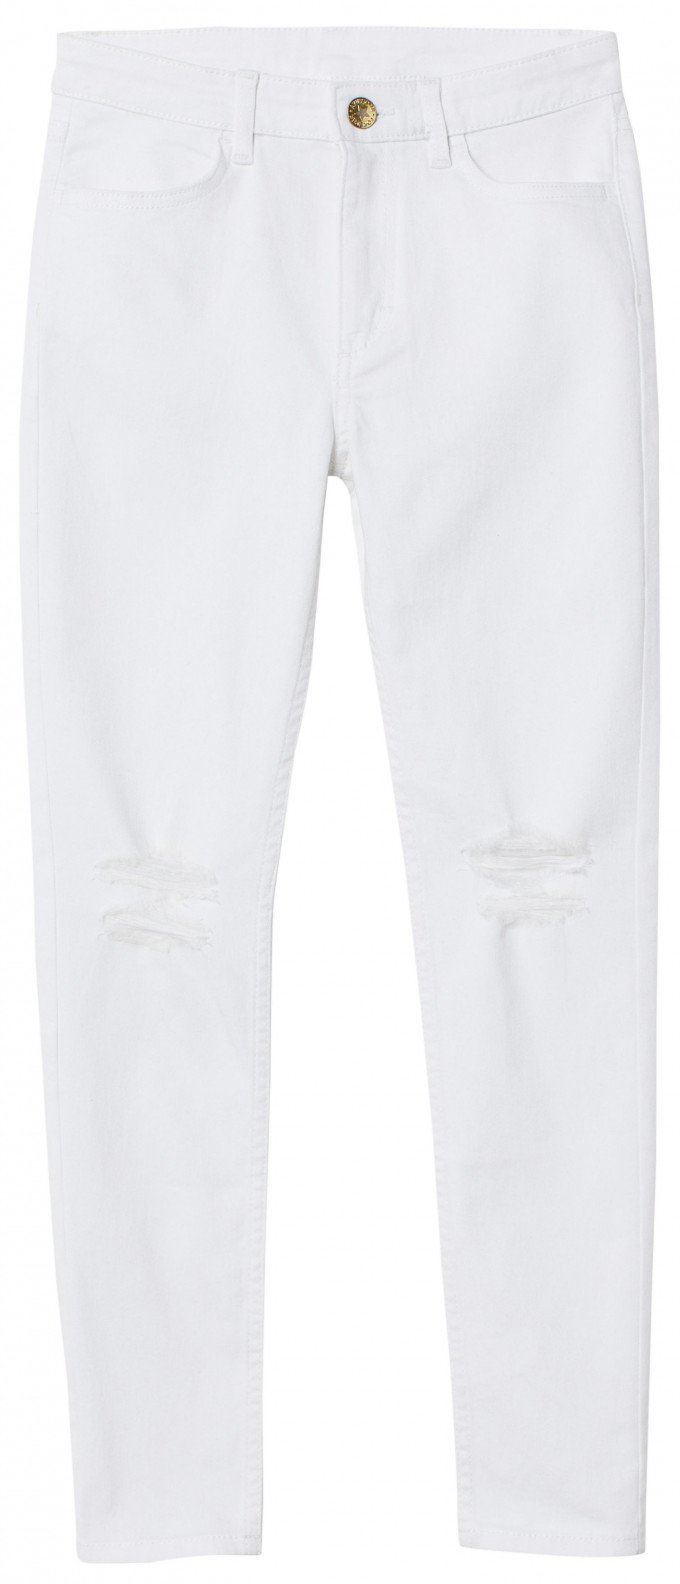 Фото - модні білі джинси для дівчинки ціна 415 грн. за штуку - Леопольд